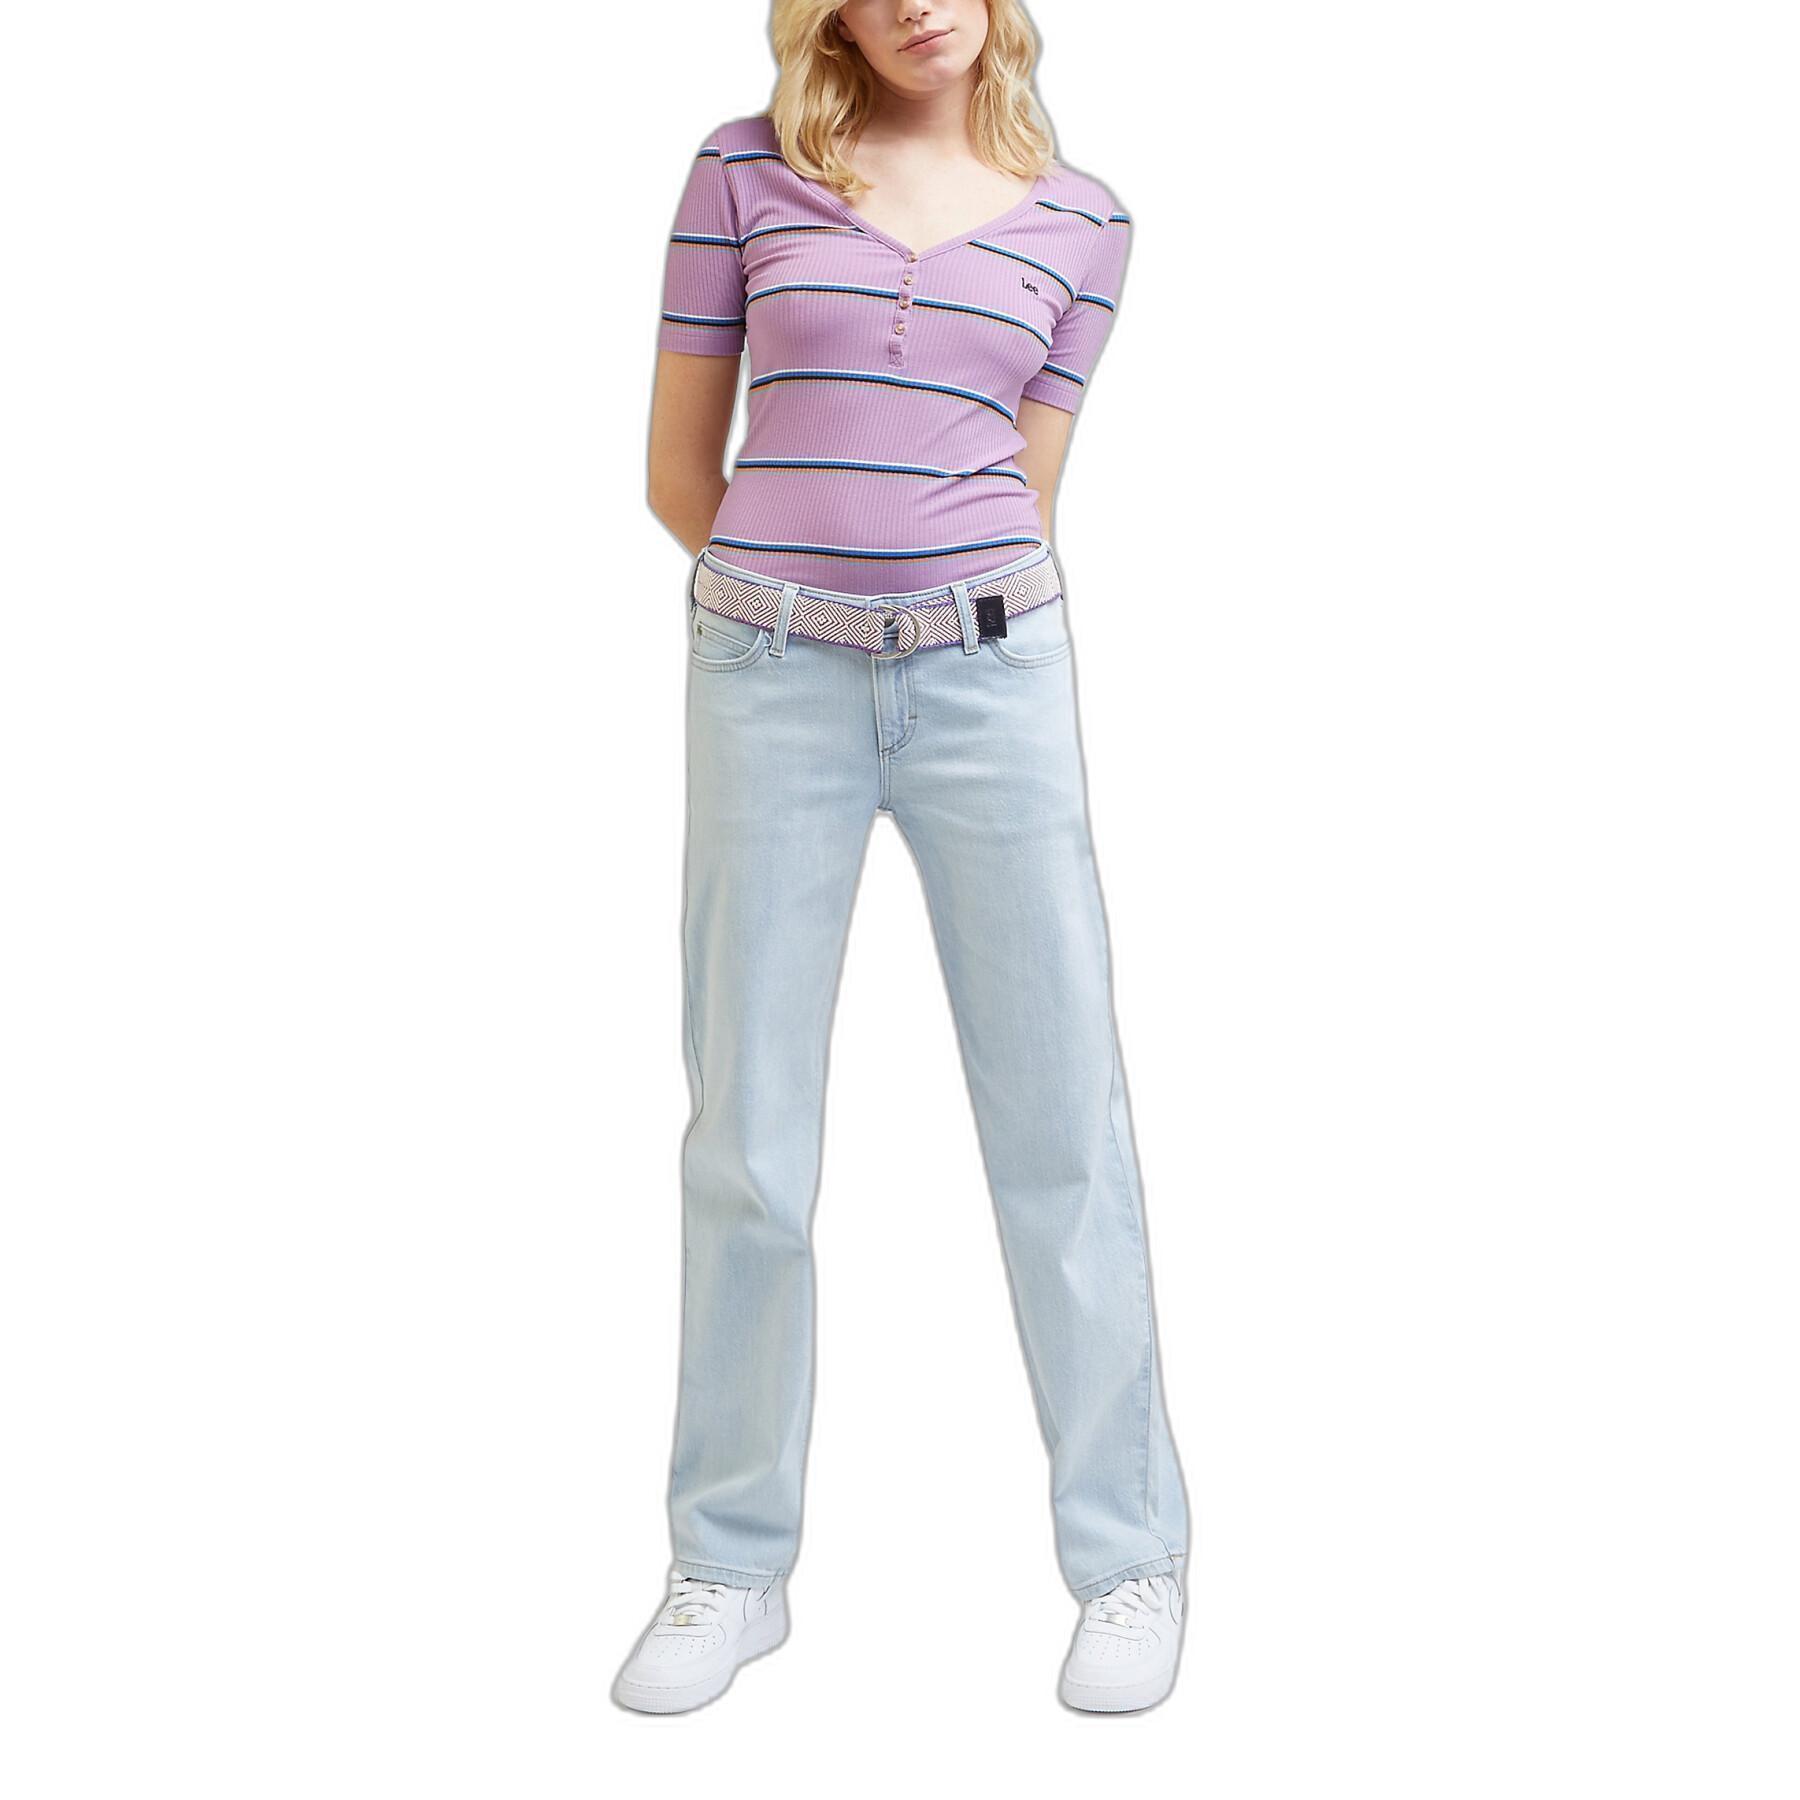 Jeans low waist woman Lee Jane